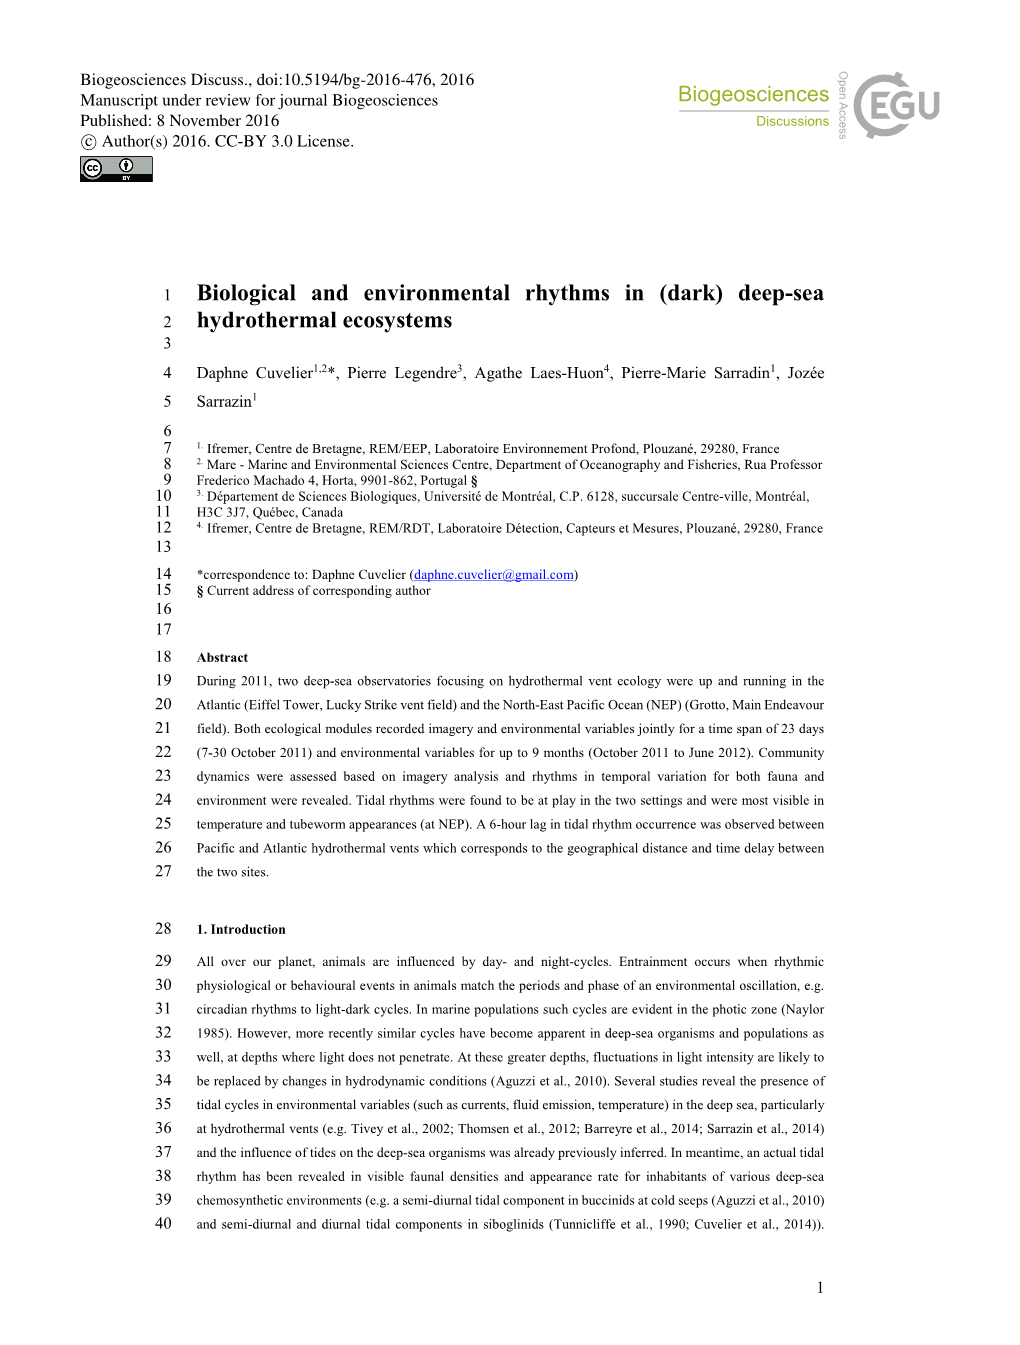 Biological and Environmental Rhythms in (Dark) Deep-Sea Hydrothermal